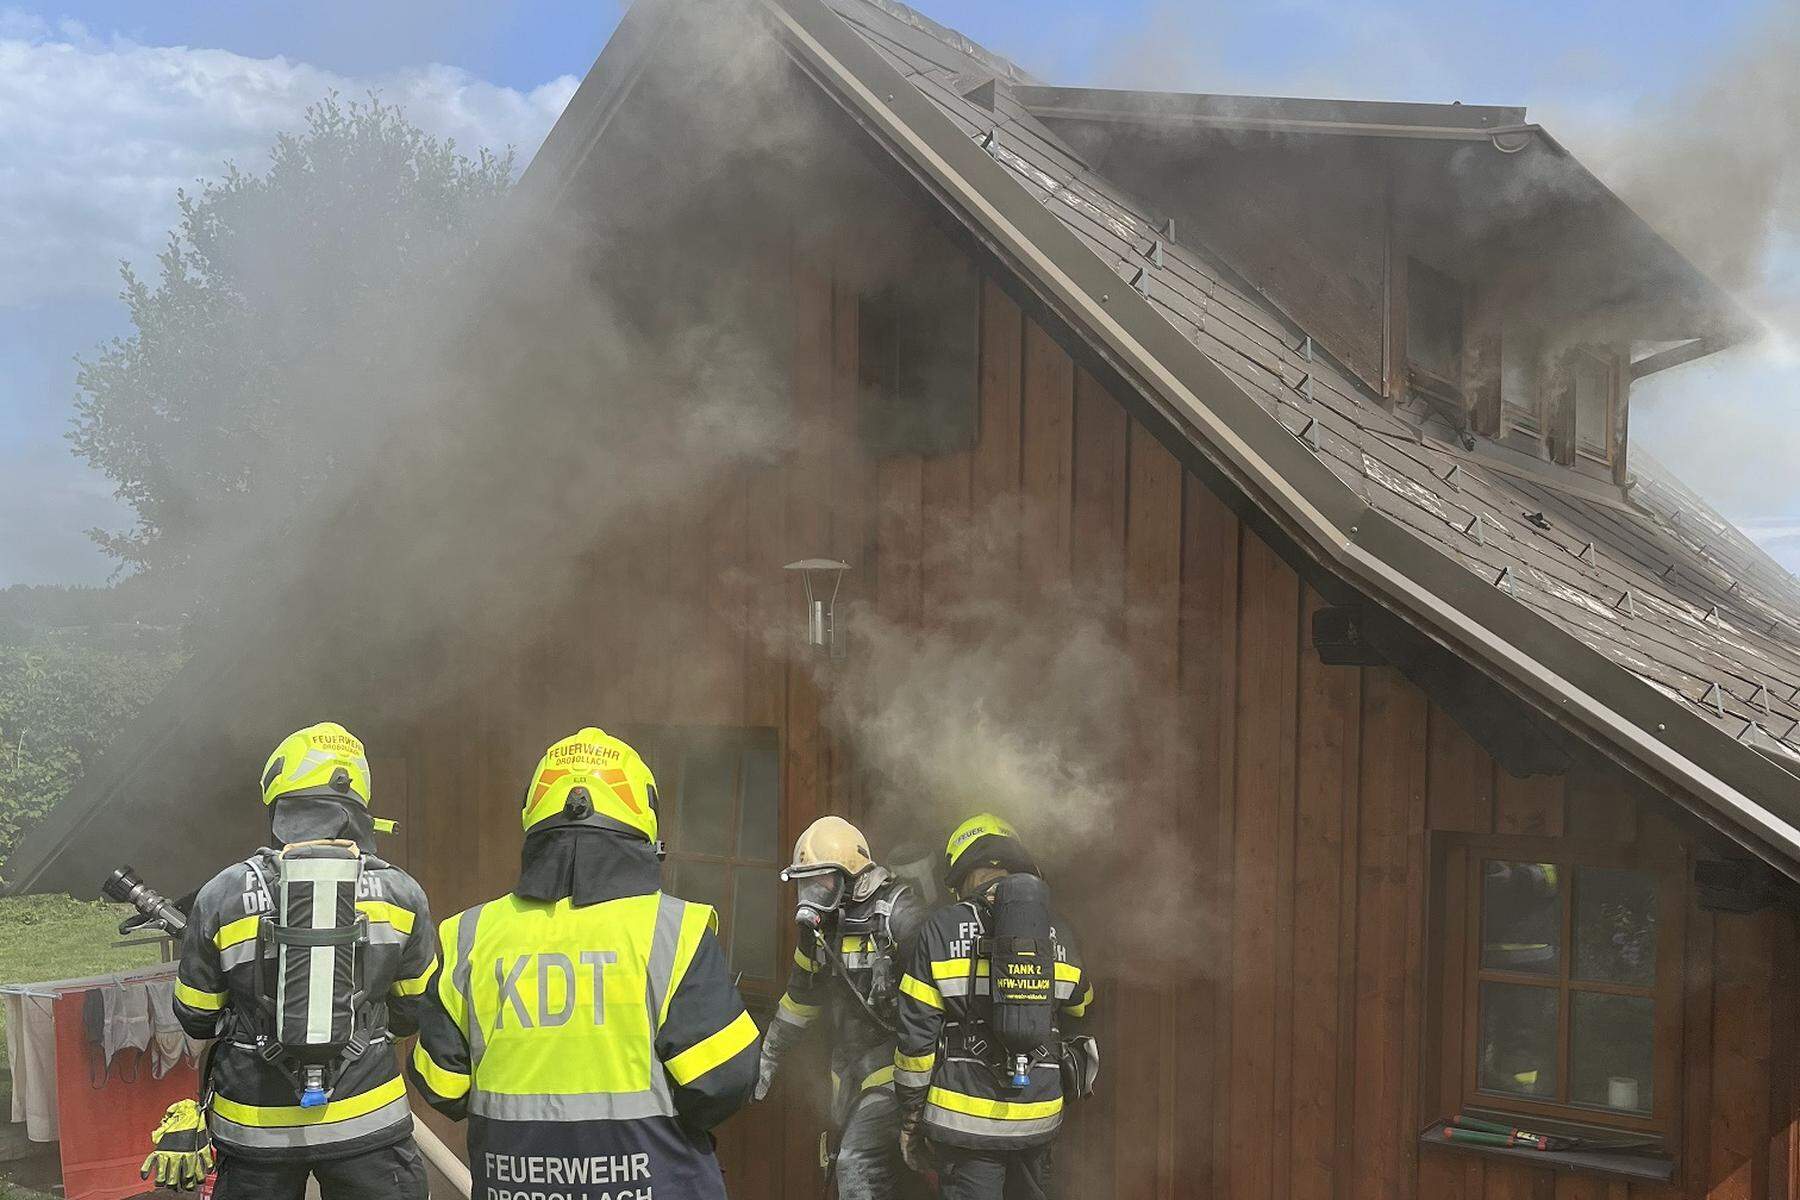 Mehrfachalarme und ein Brand: Villacher Feuerwehr war am Montag im Dauereinsatz